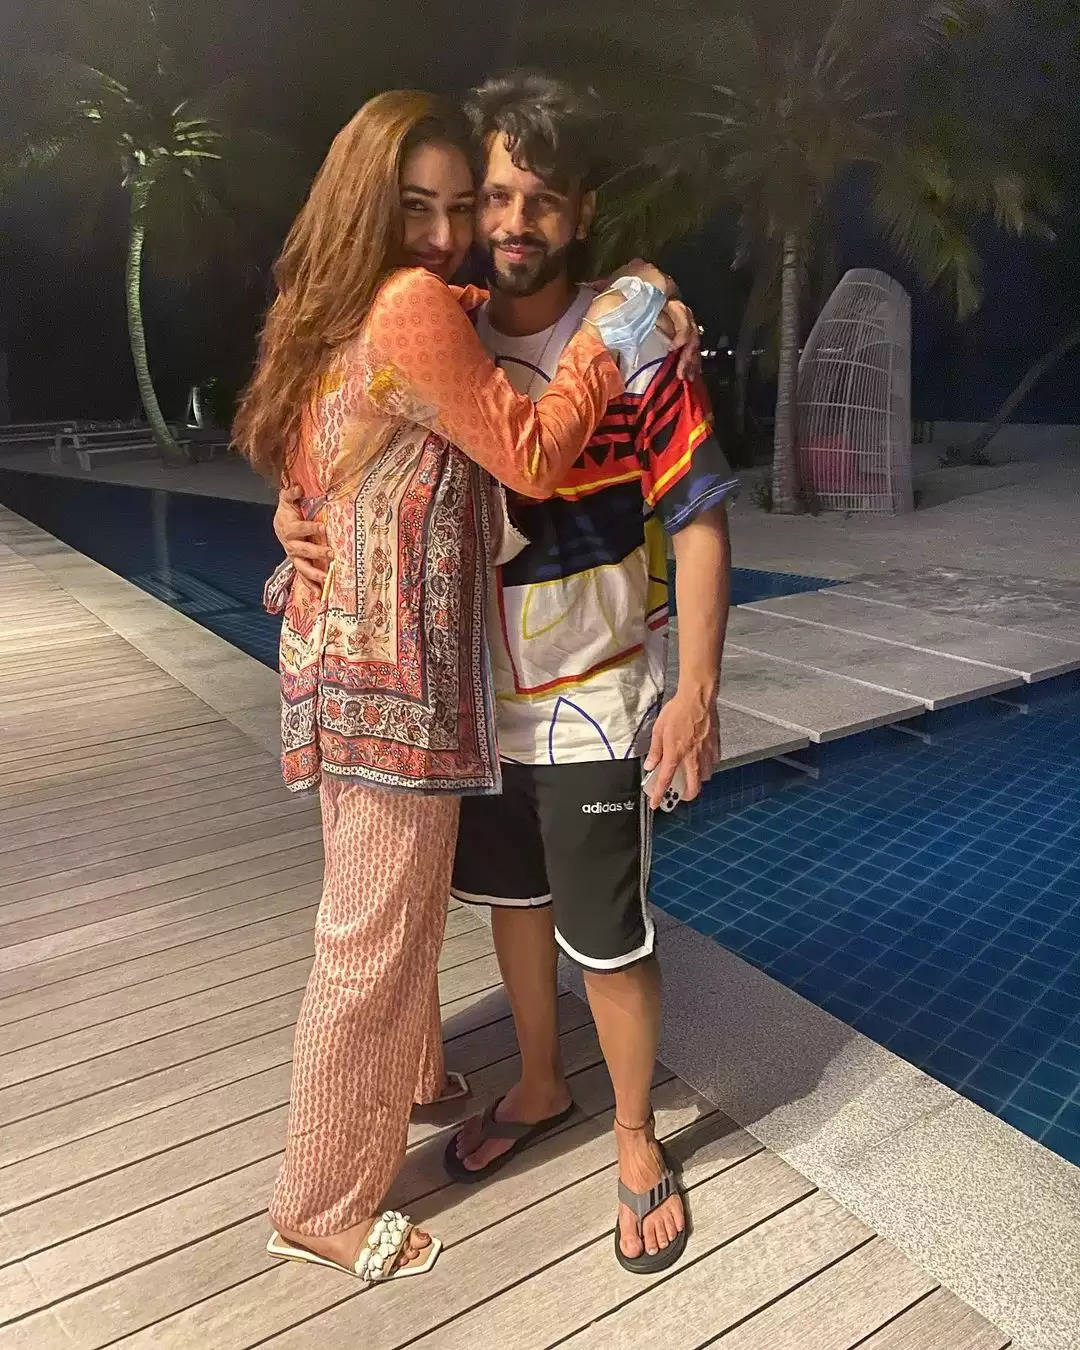 मालदीव में छुट्टियां मना रहा है यह नया कपल, पति को हग करते दिखी यह अदाकारा